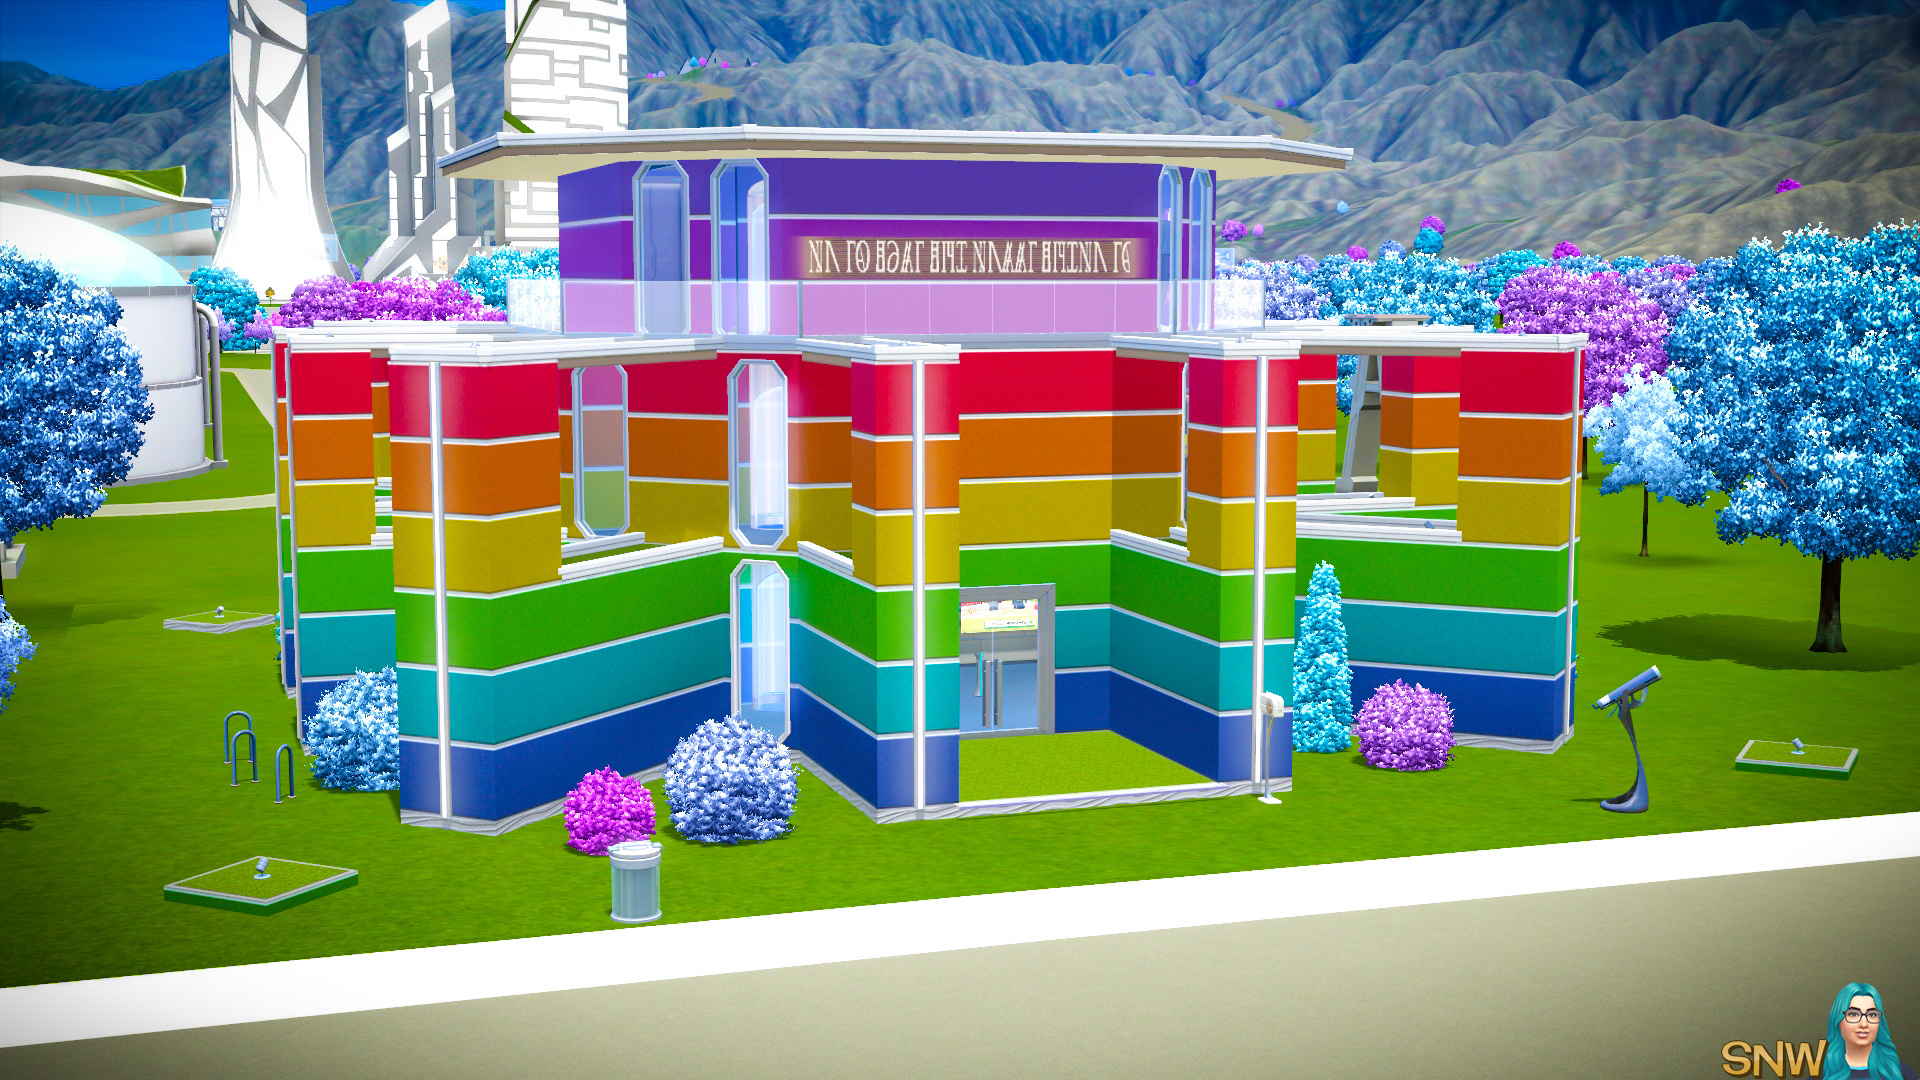 The Rainbow House